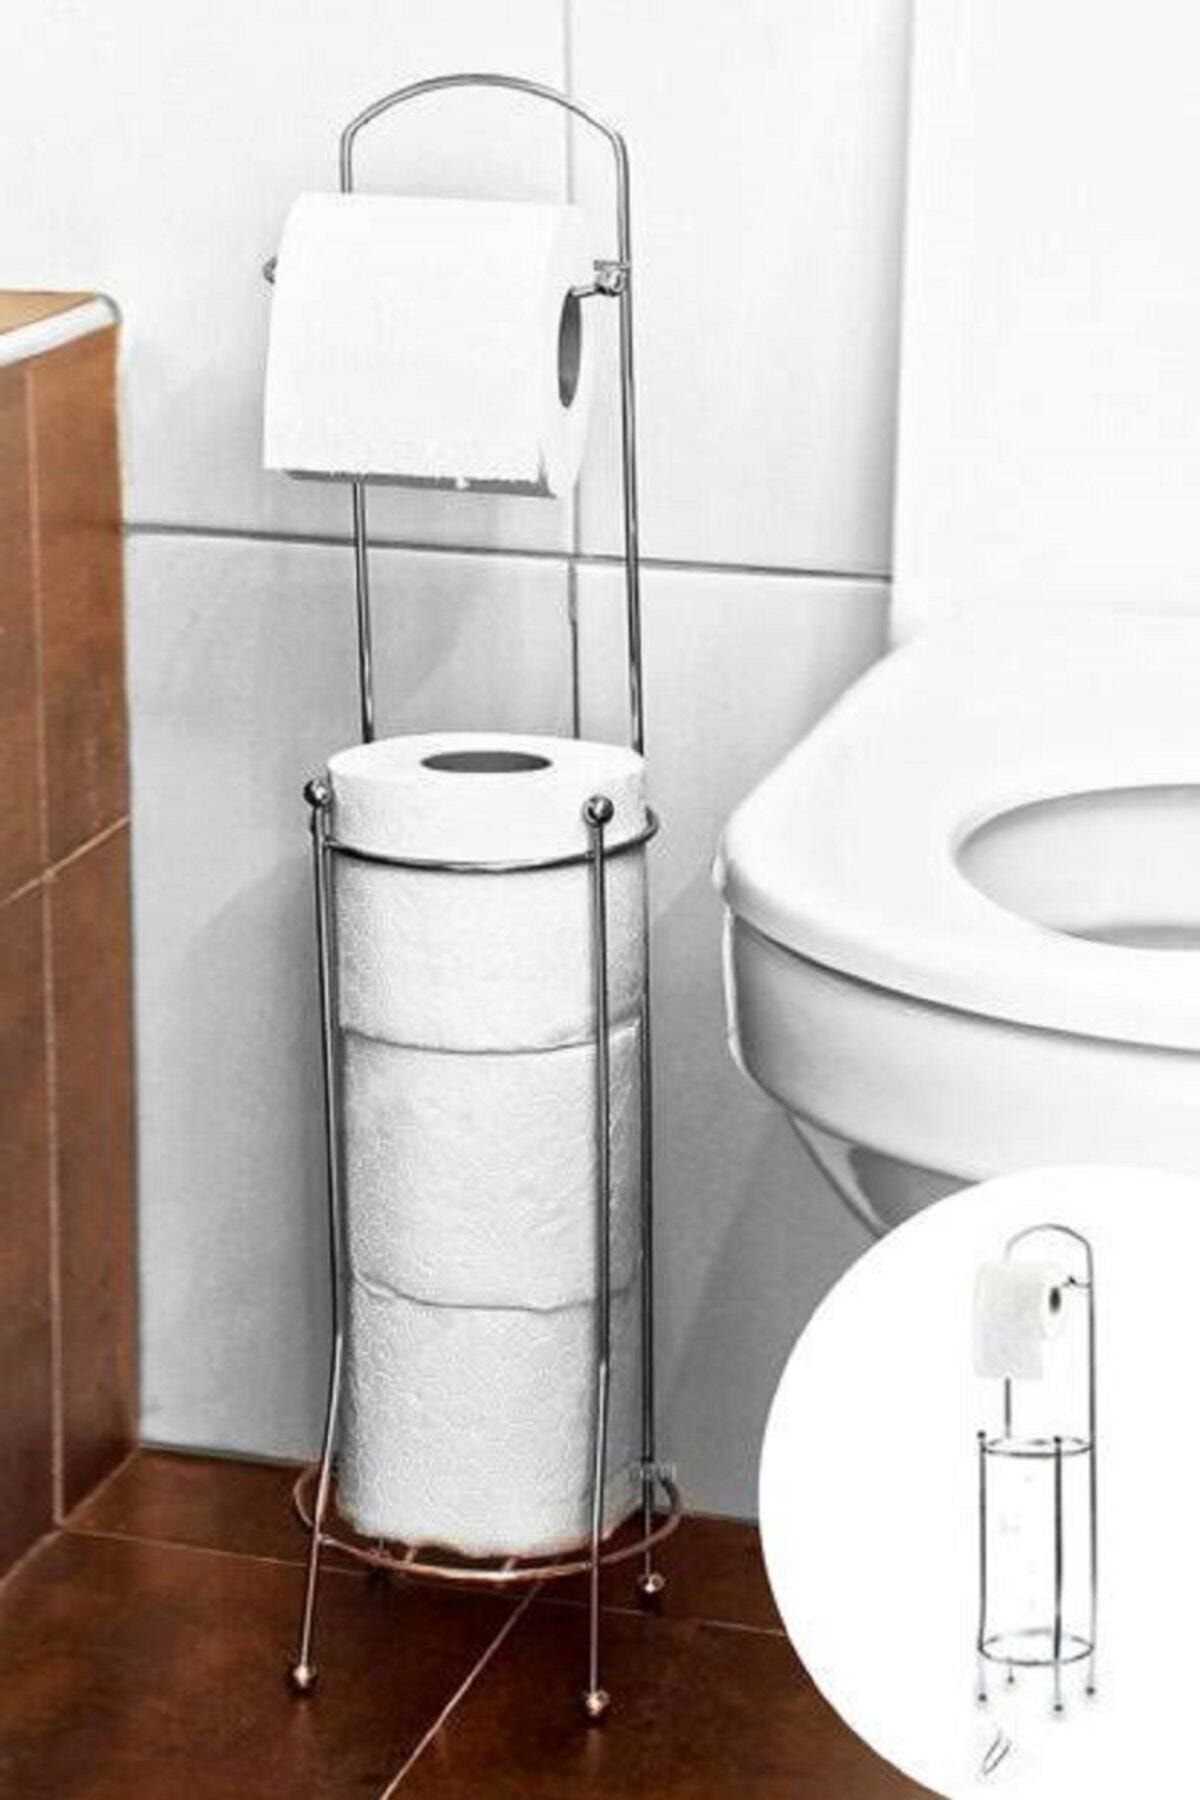 Atadan Wc-tuvalet Kağıtlık-krom Yedek Hazneli